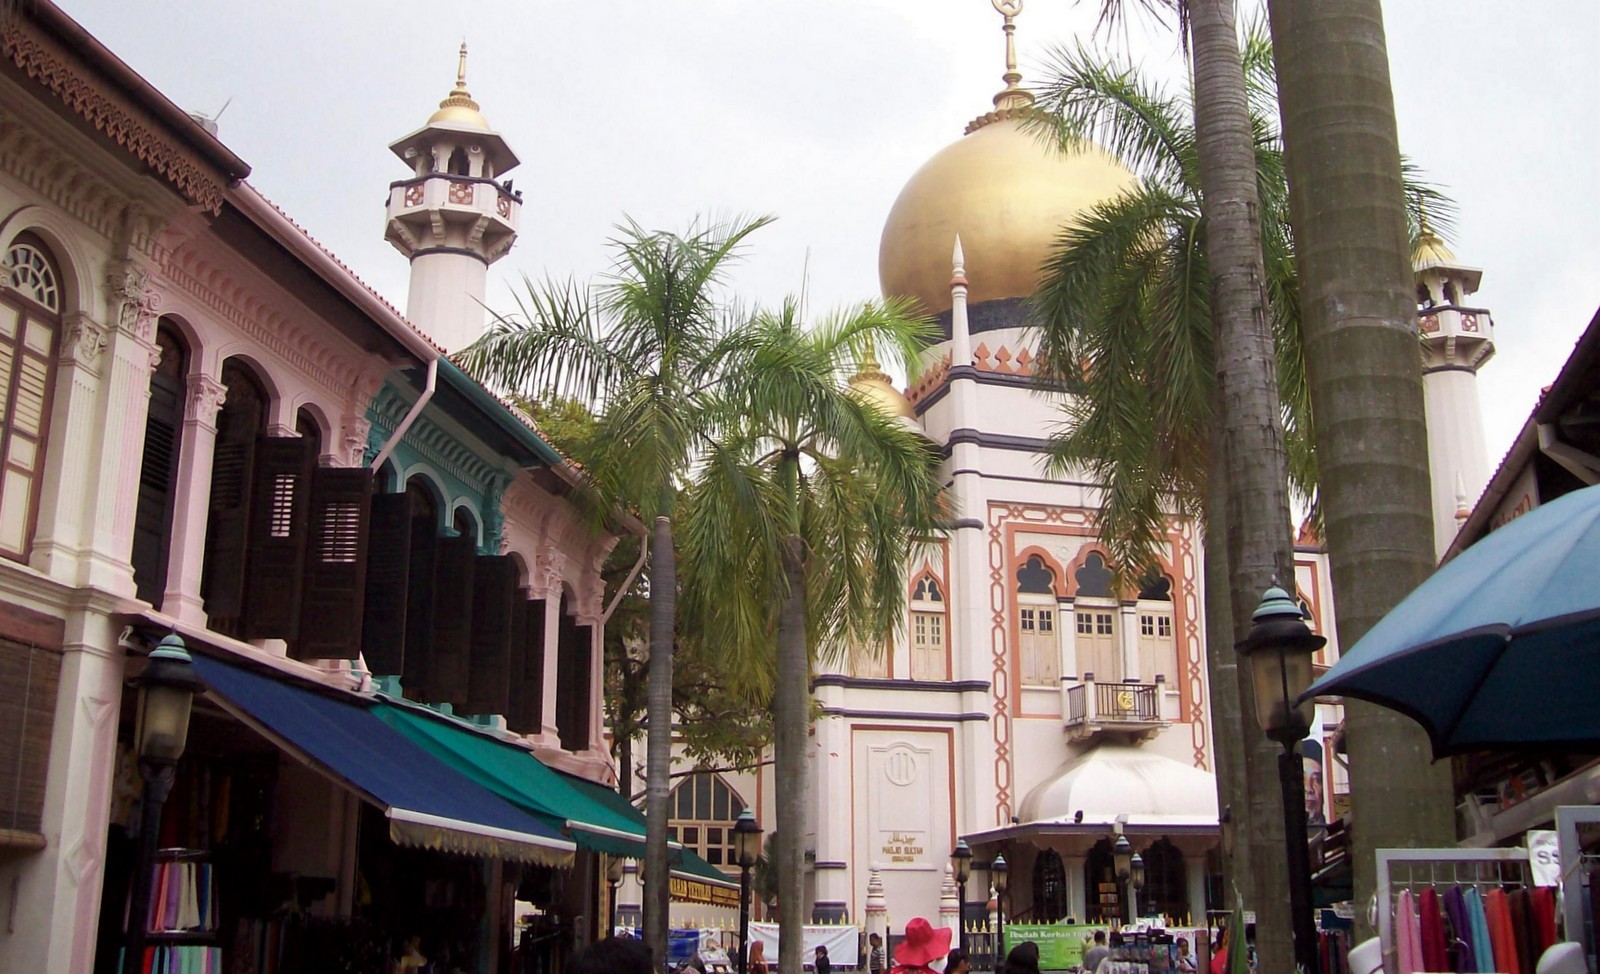 Sultan Moschee Arab Street